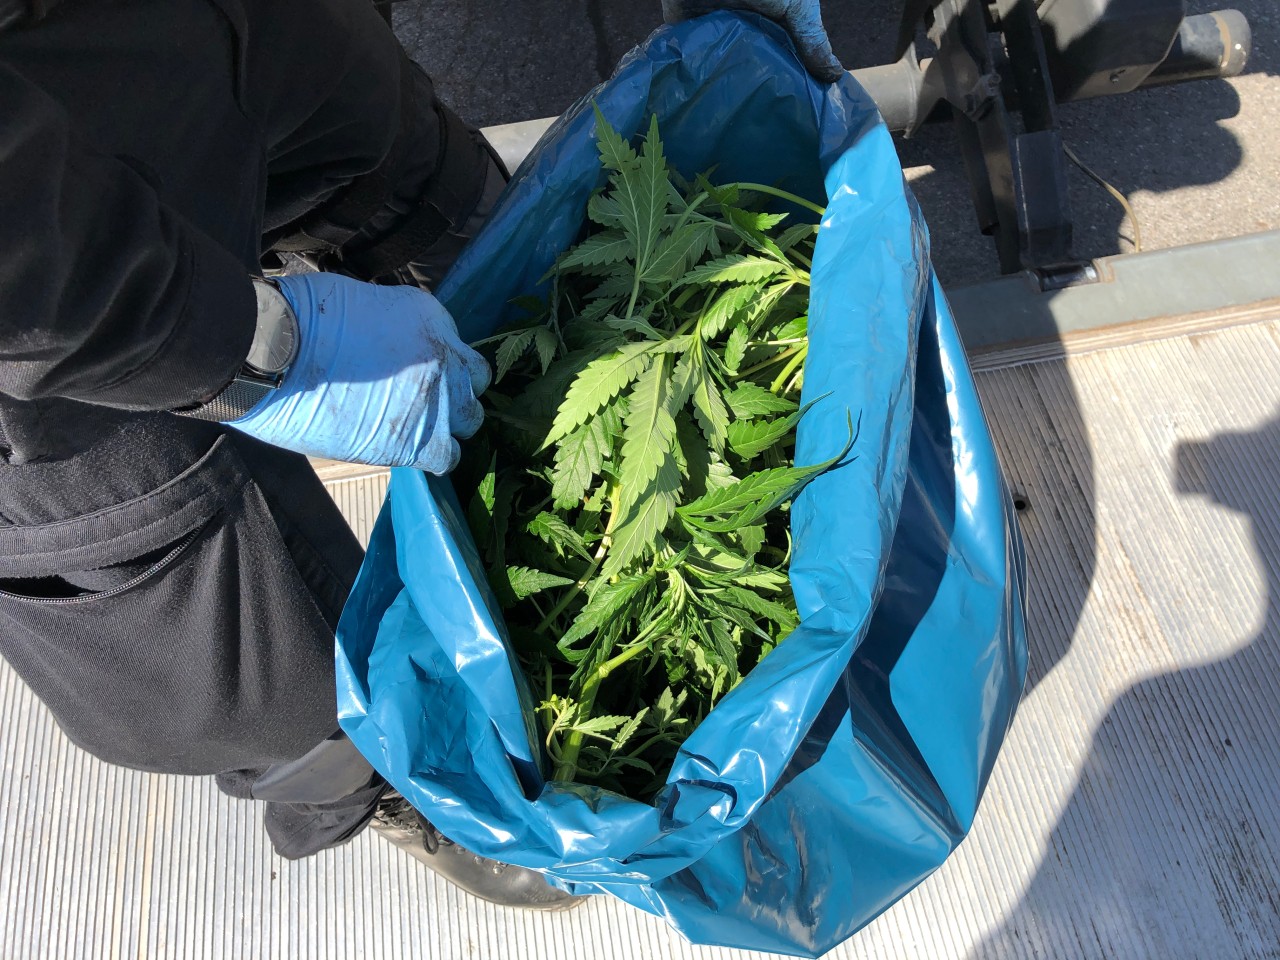 Die Polizei stellte in Essen reichlich Cannabis-Pflanzen sicher. 